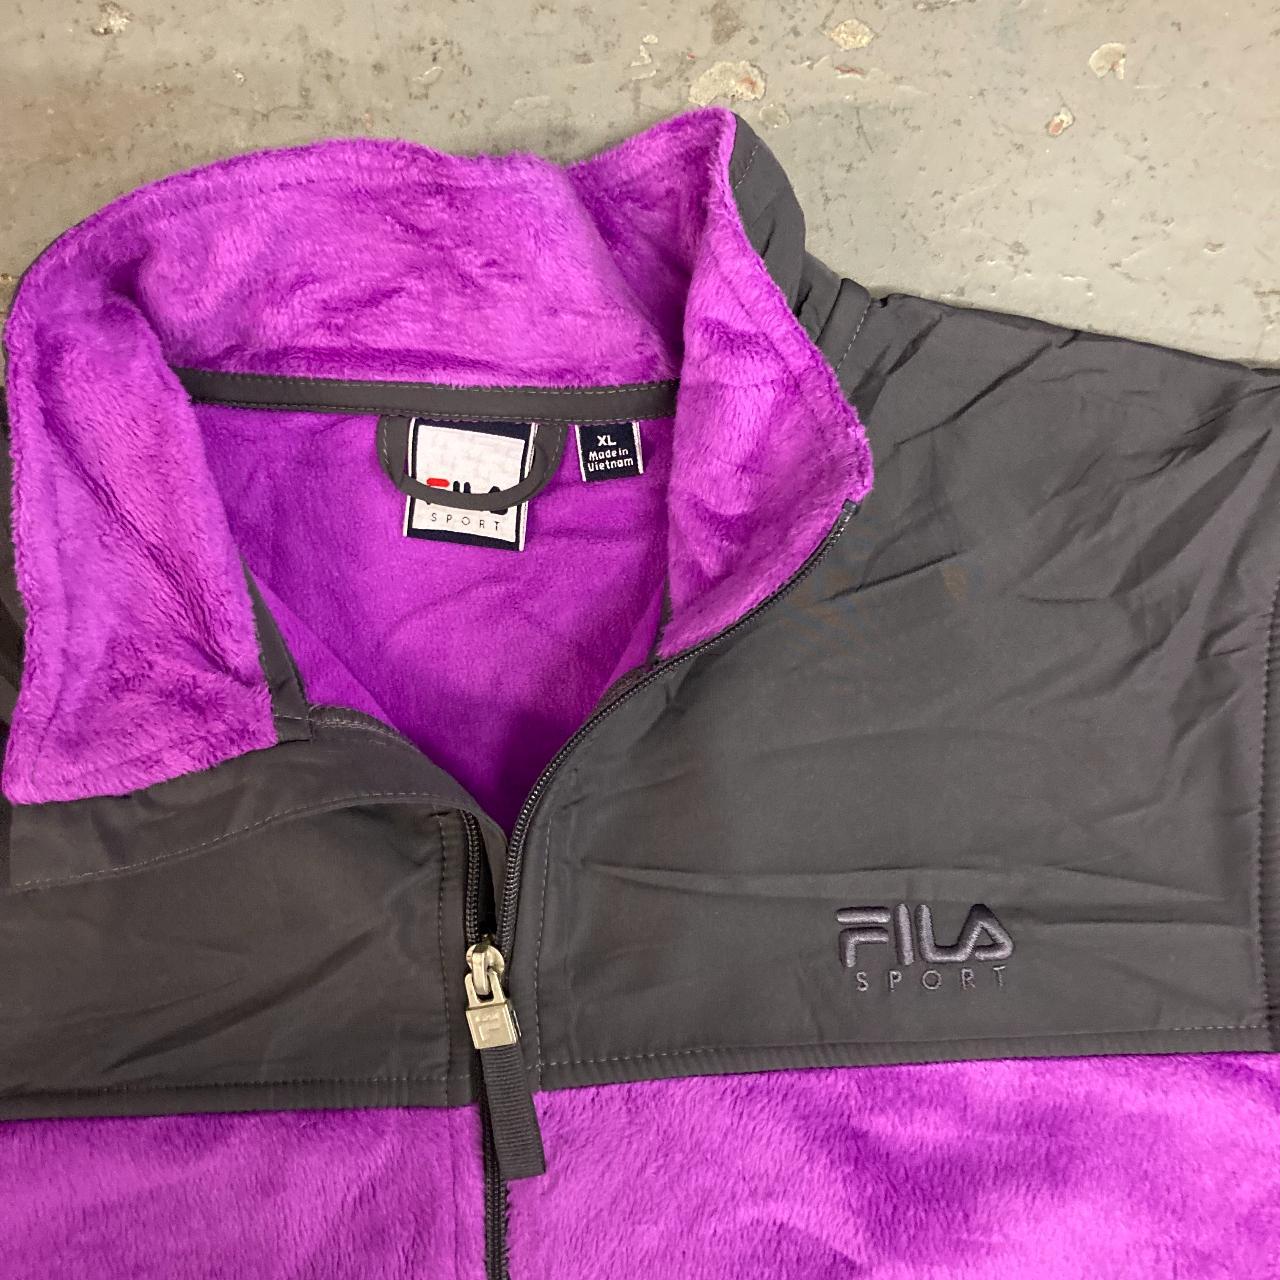 Fila Women's Purple Sweatshirt | Depop